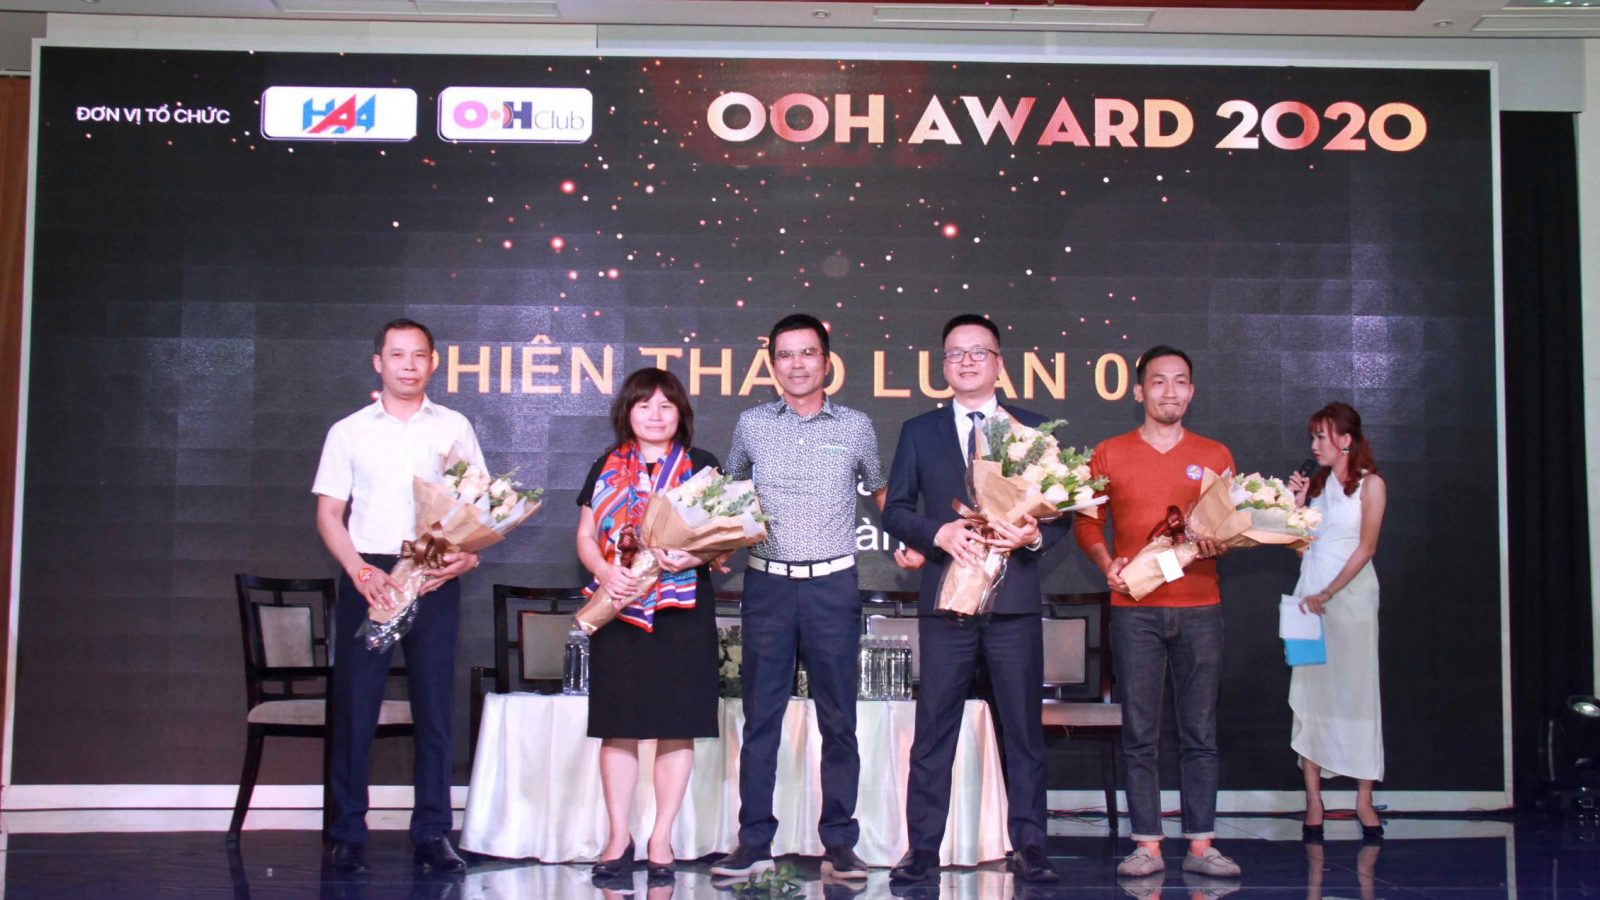 OOH Award